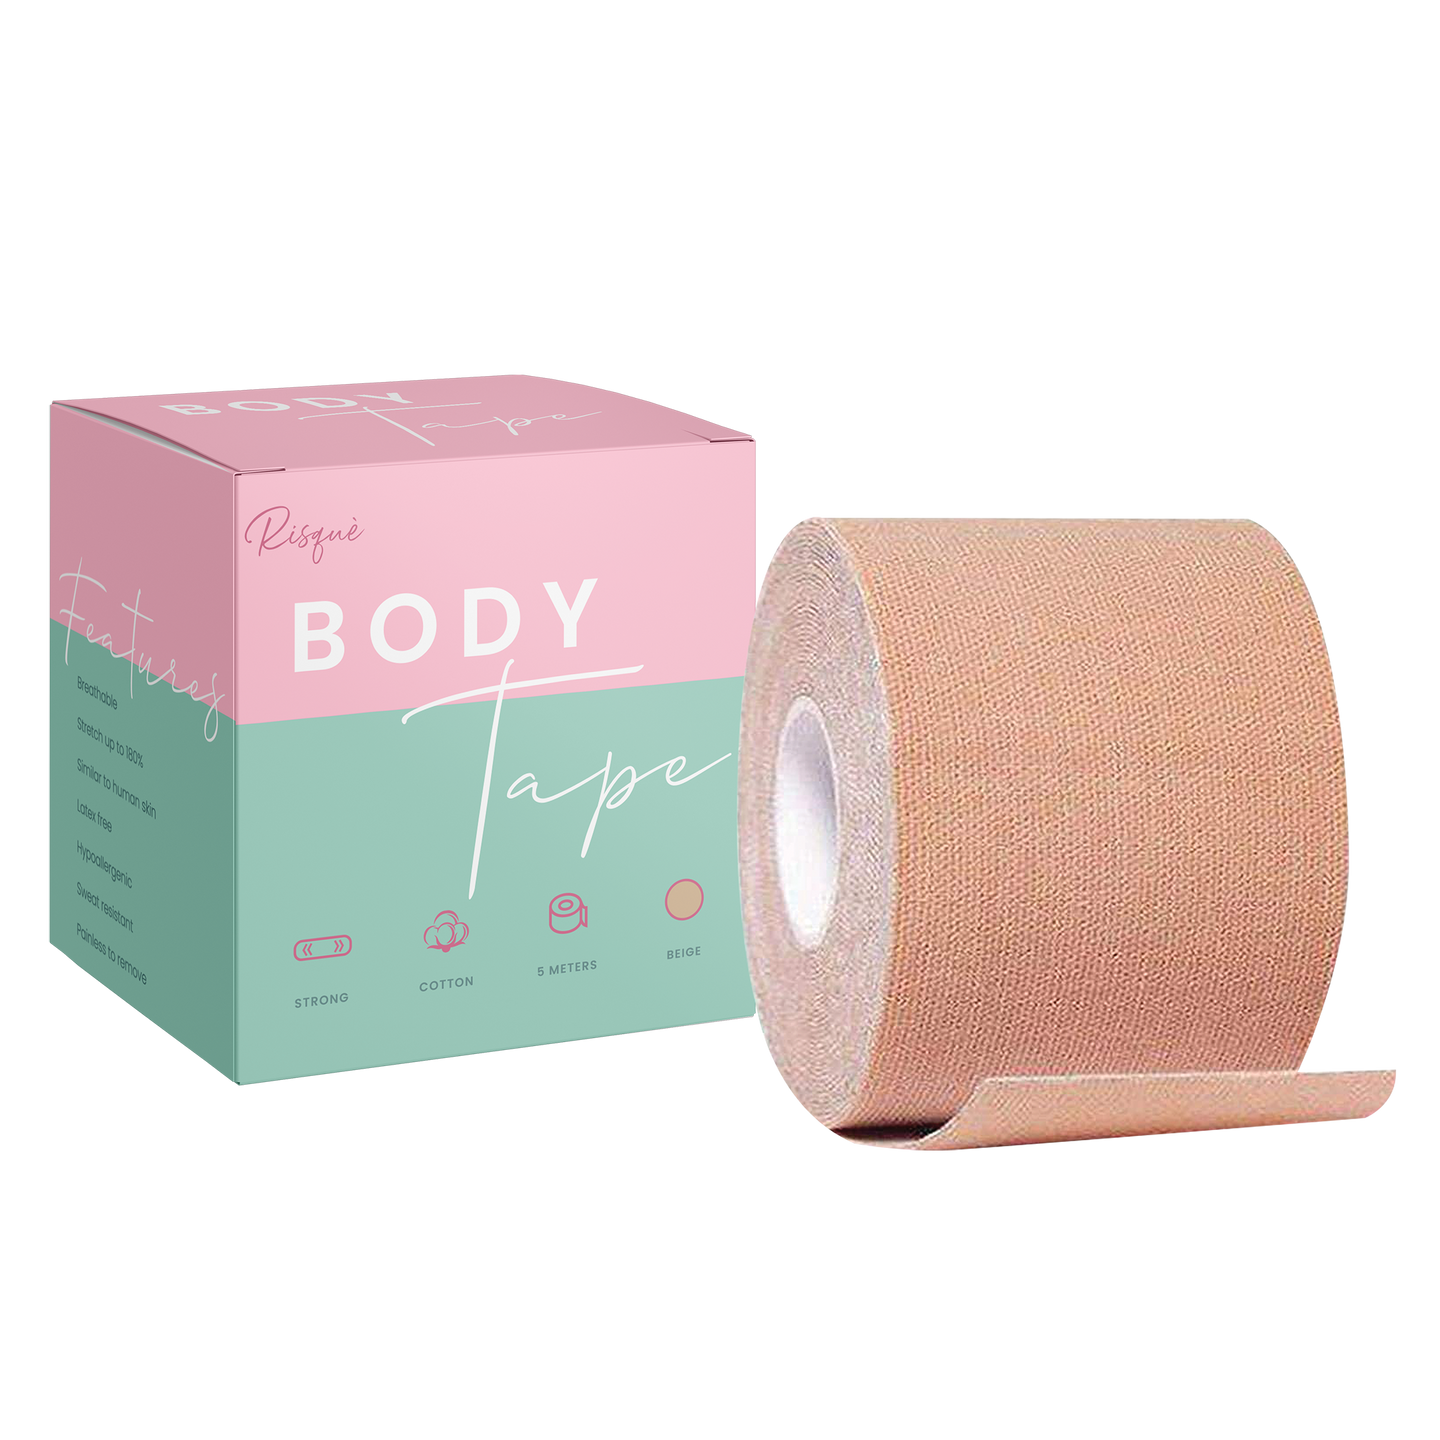 bare wear Body & Boob Tape Waterproof & Sweat-Proof Bra Tape - 5m